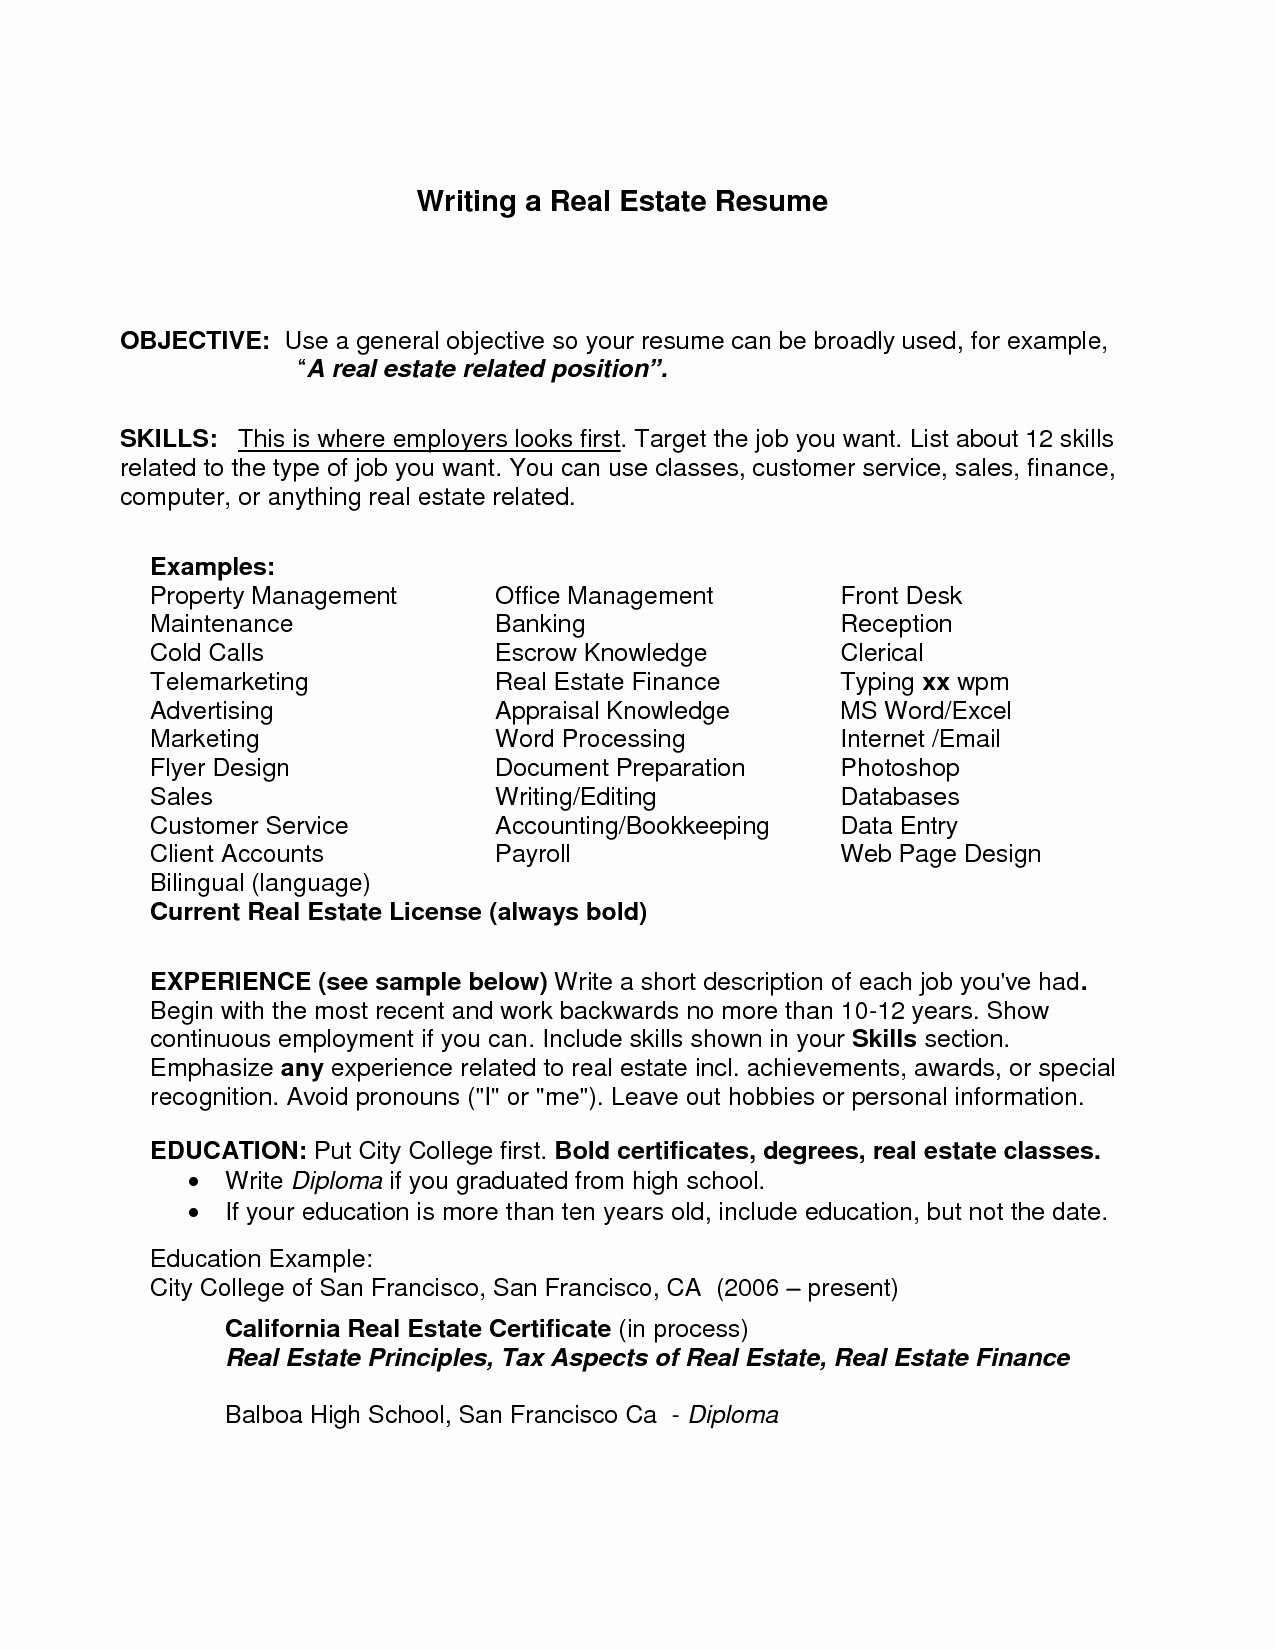 Grant Writer Job Description